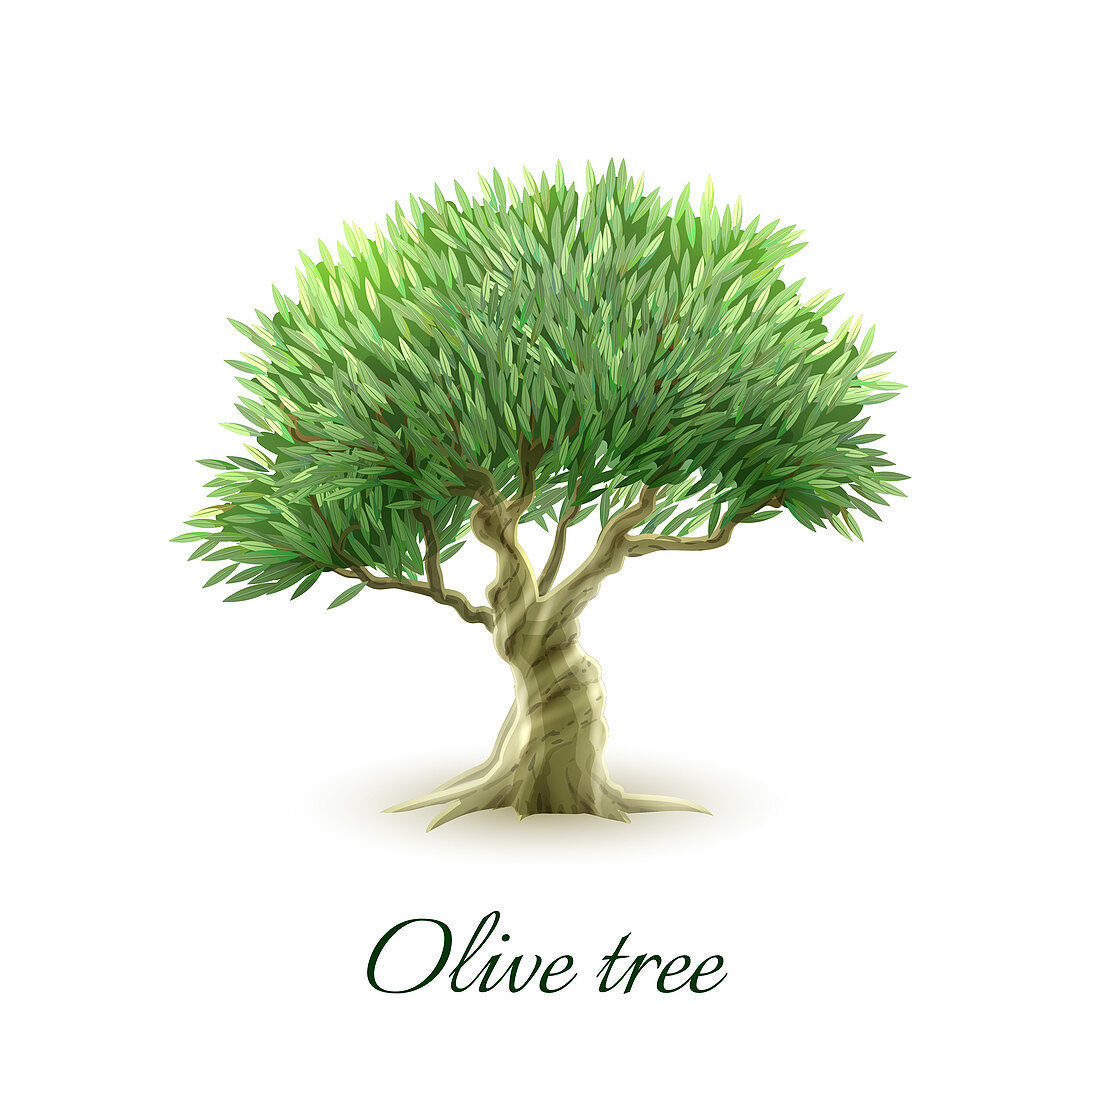 Olive tree, illustration